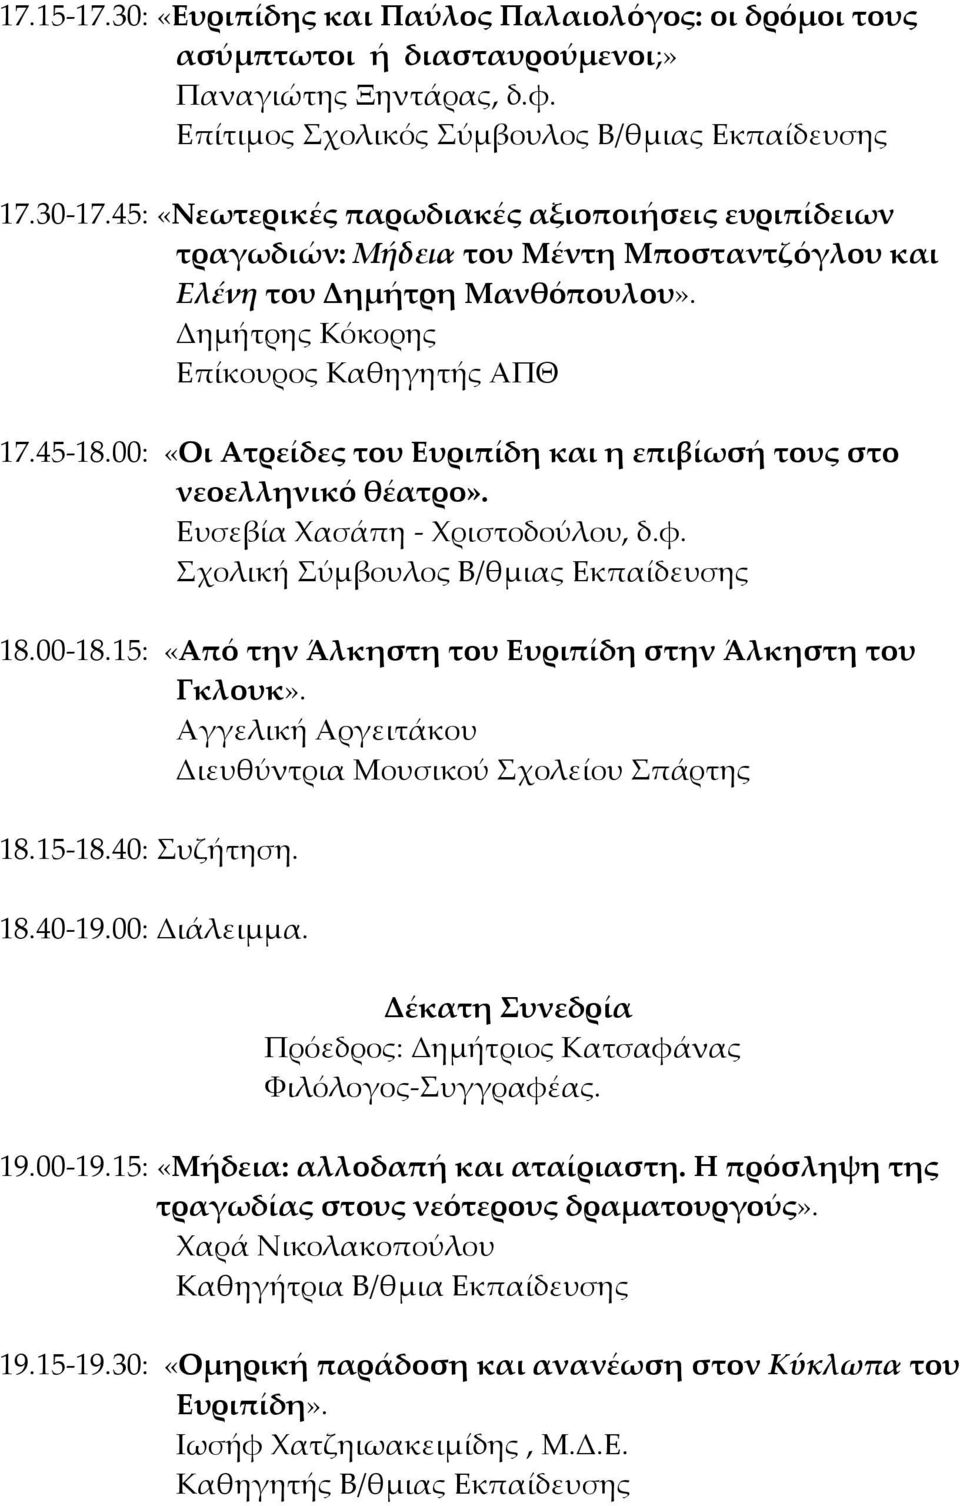 00: «Οι Ατρείδες του Ευριπίδη και η επιβίωσή τους στο νεοελληνικό θέατρο». Ευσεβία Φασάπη - Φριστοδούλου, δ.φ. χολική ύμβουλος Β/θμιας Εκπαίδευσης 18.00-18.